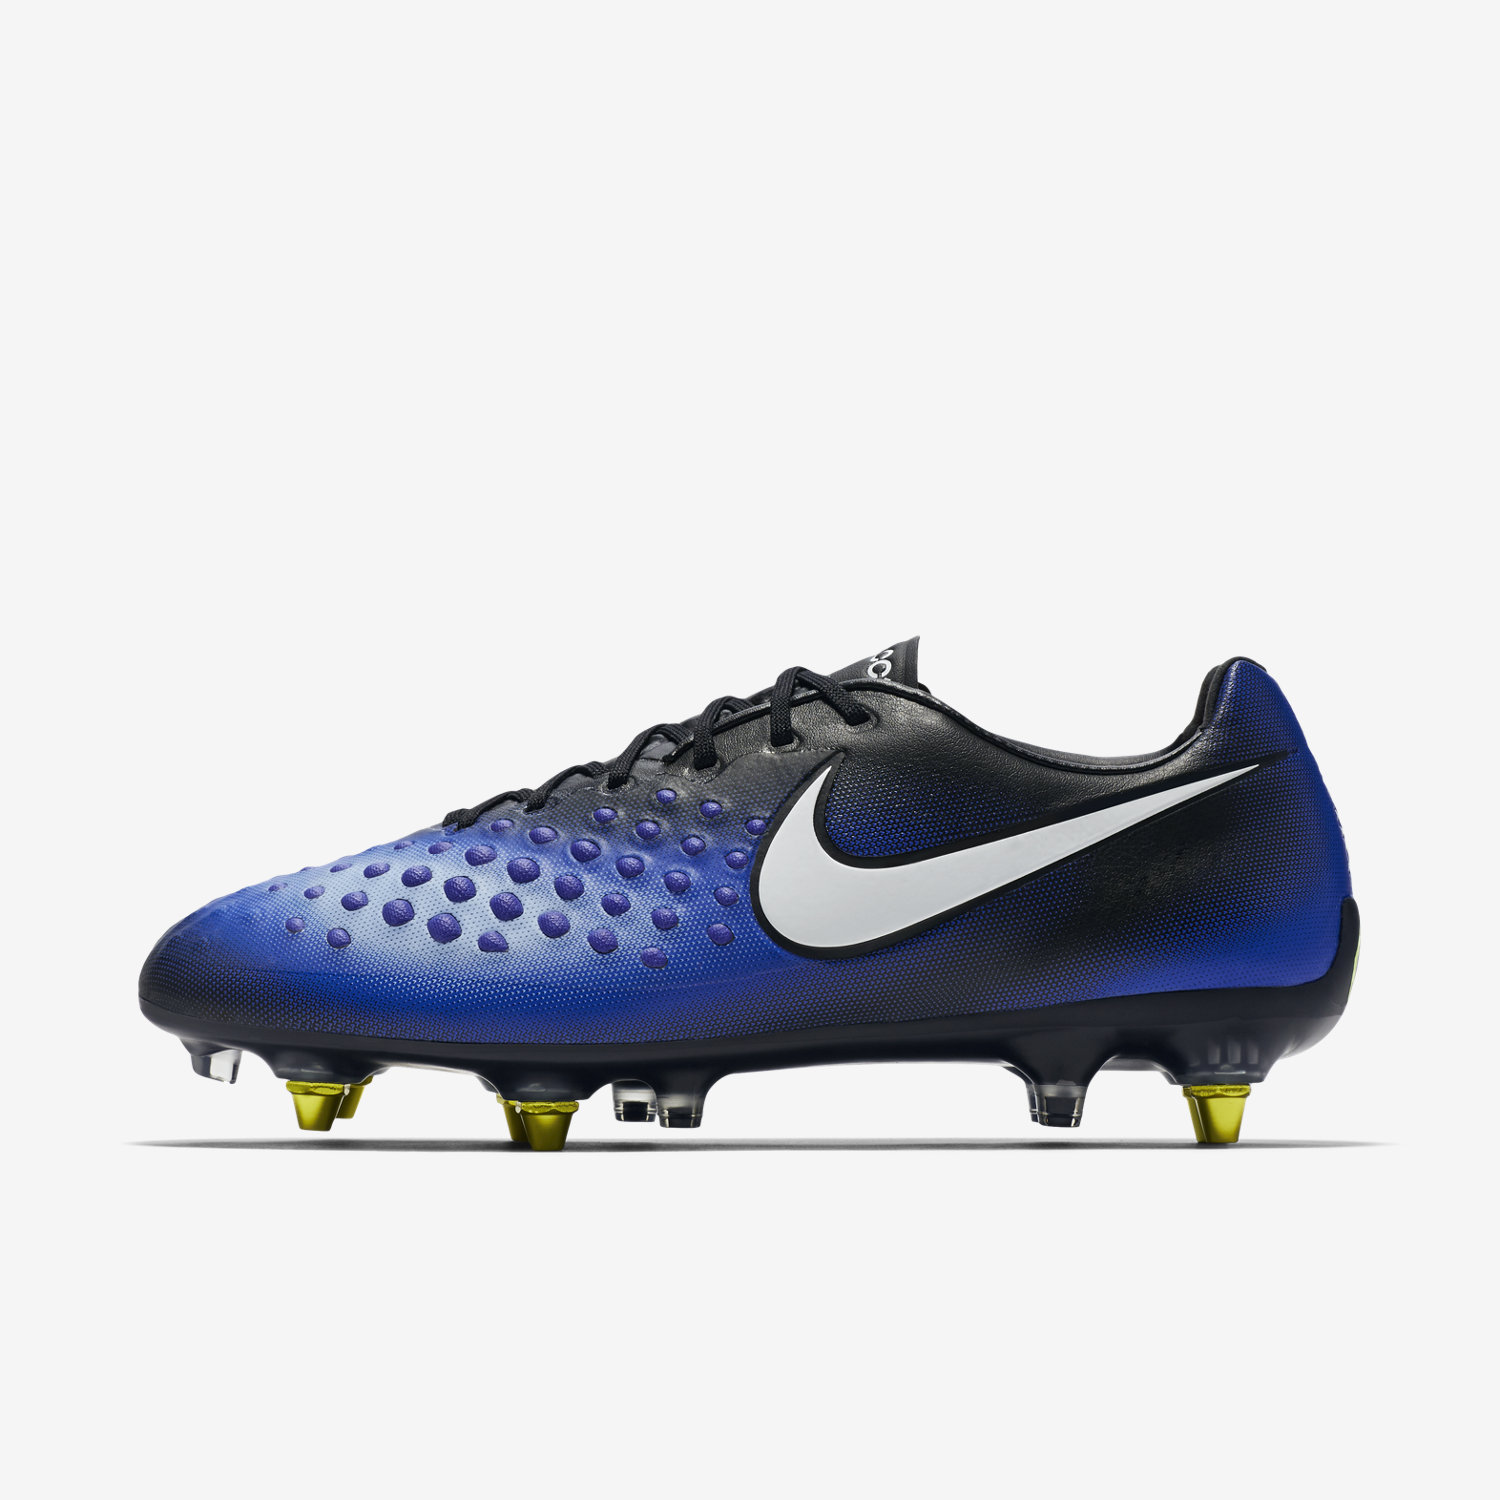 ποδοσφαιρικα παπουτσια ανδρικα Nike Magista Opus II SG-PRO Anti Clog Traction μαυρα/μπλε/ασπρα 38844